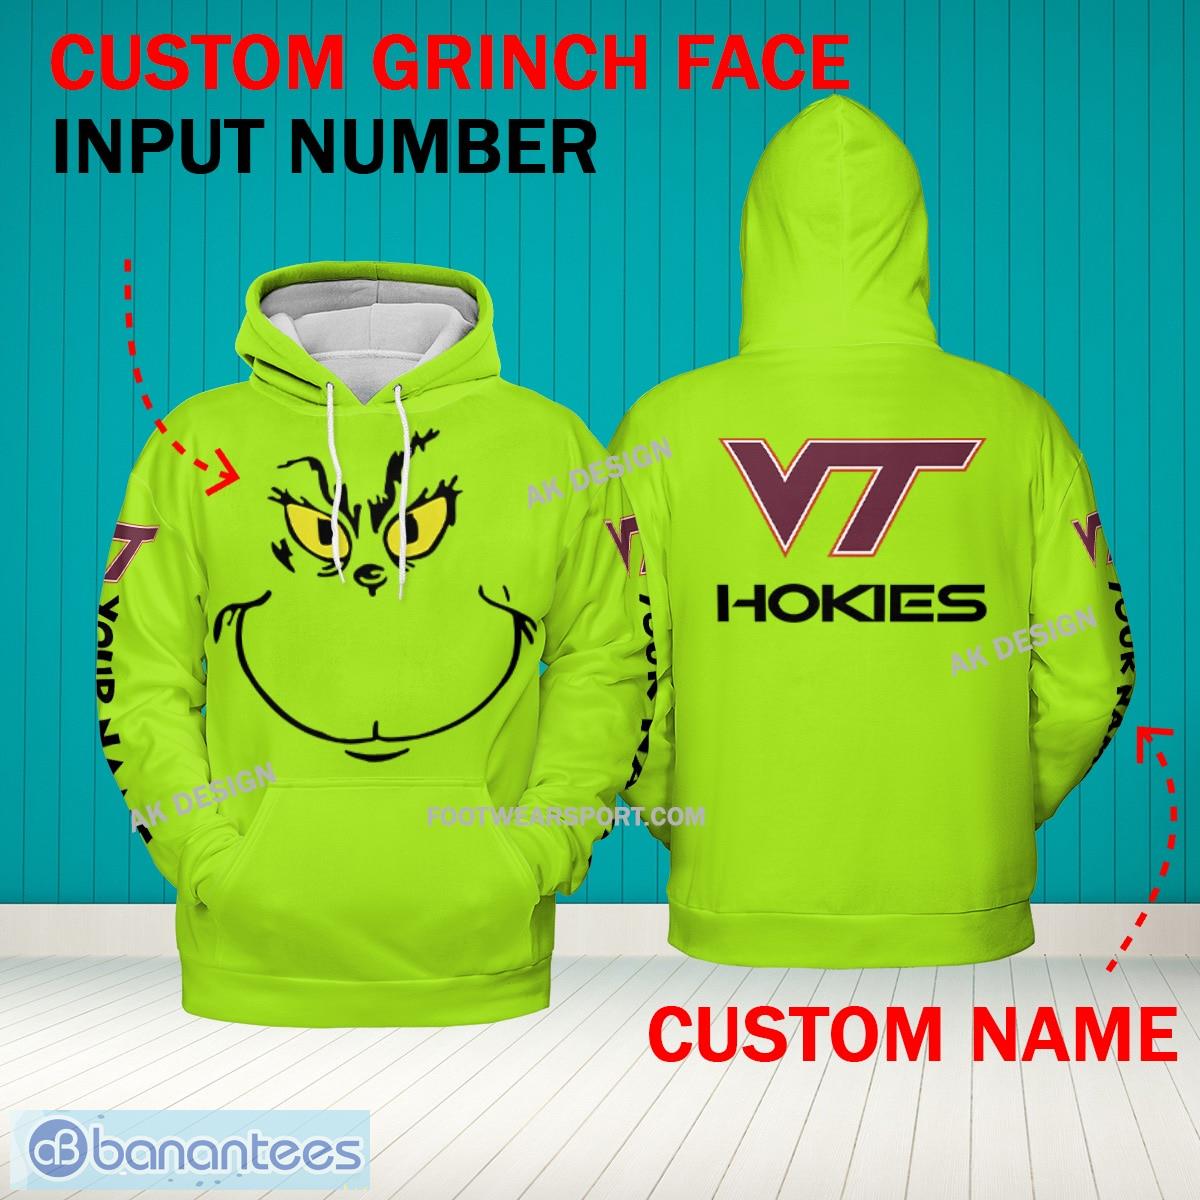 Grinch Face Virginia Tech Hokies 3D Hoodie, Zip Hoodie, Sweater Green AOP Custom Number And Name - Grinch Face NCAA Virginia Tech Hokies 3D Hoodie